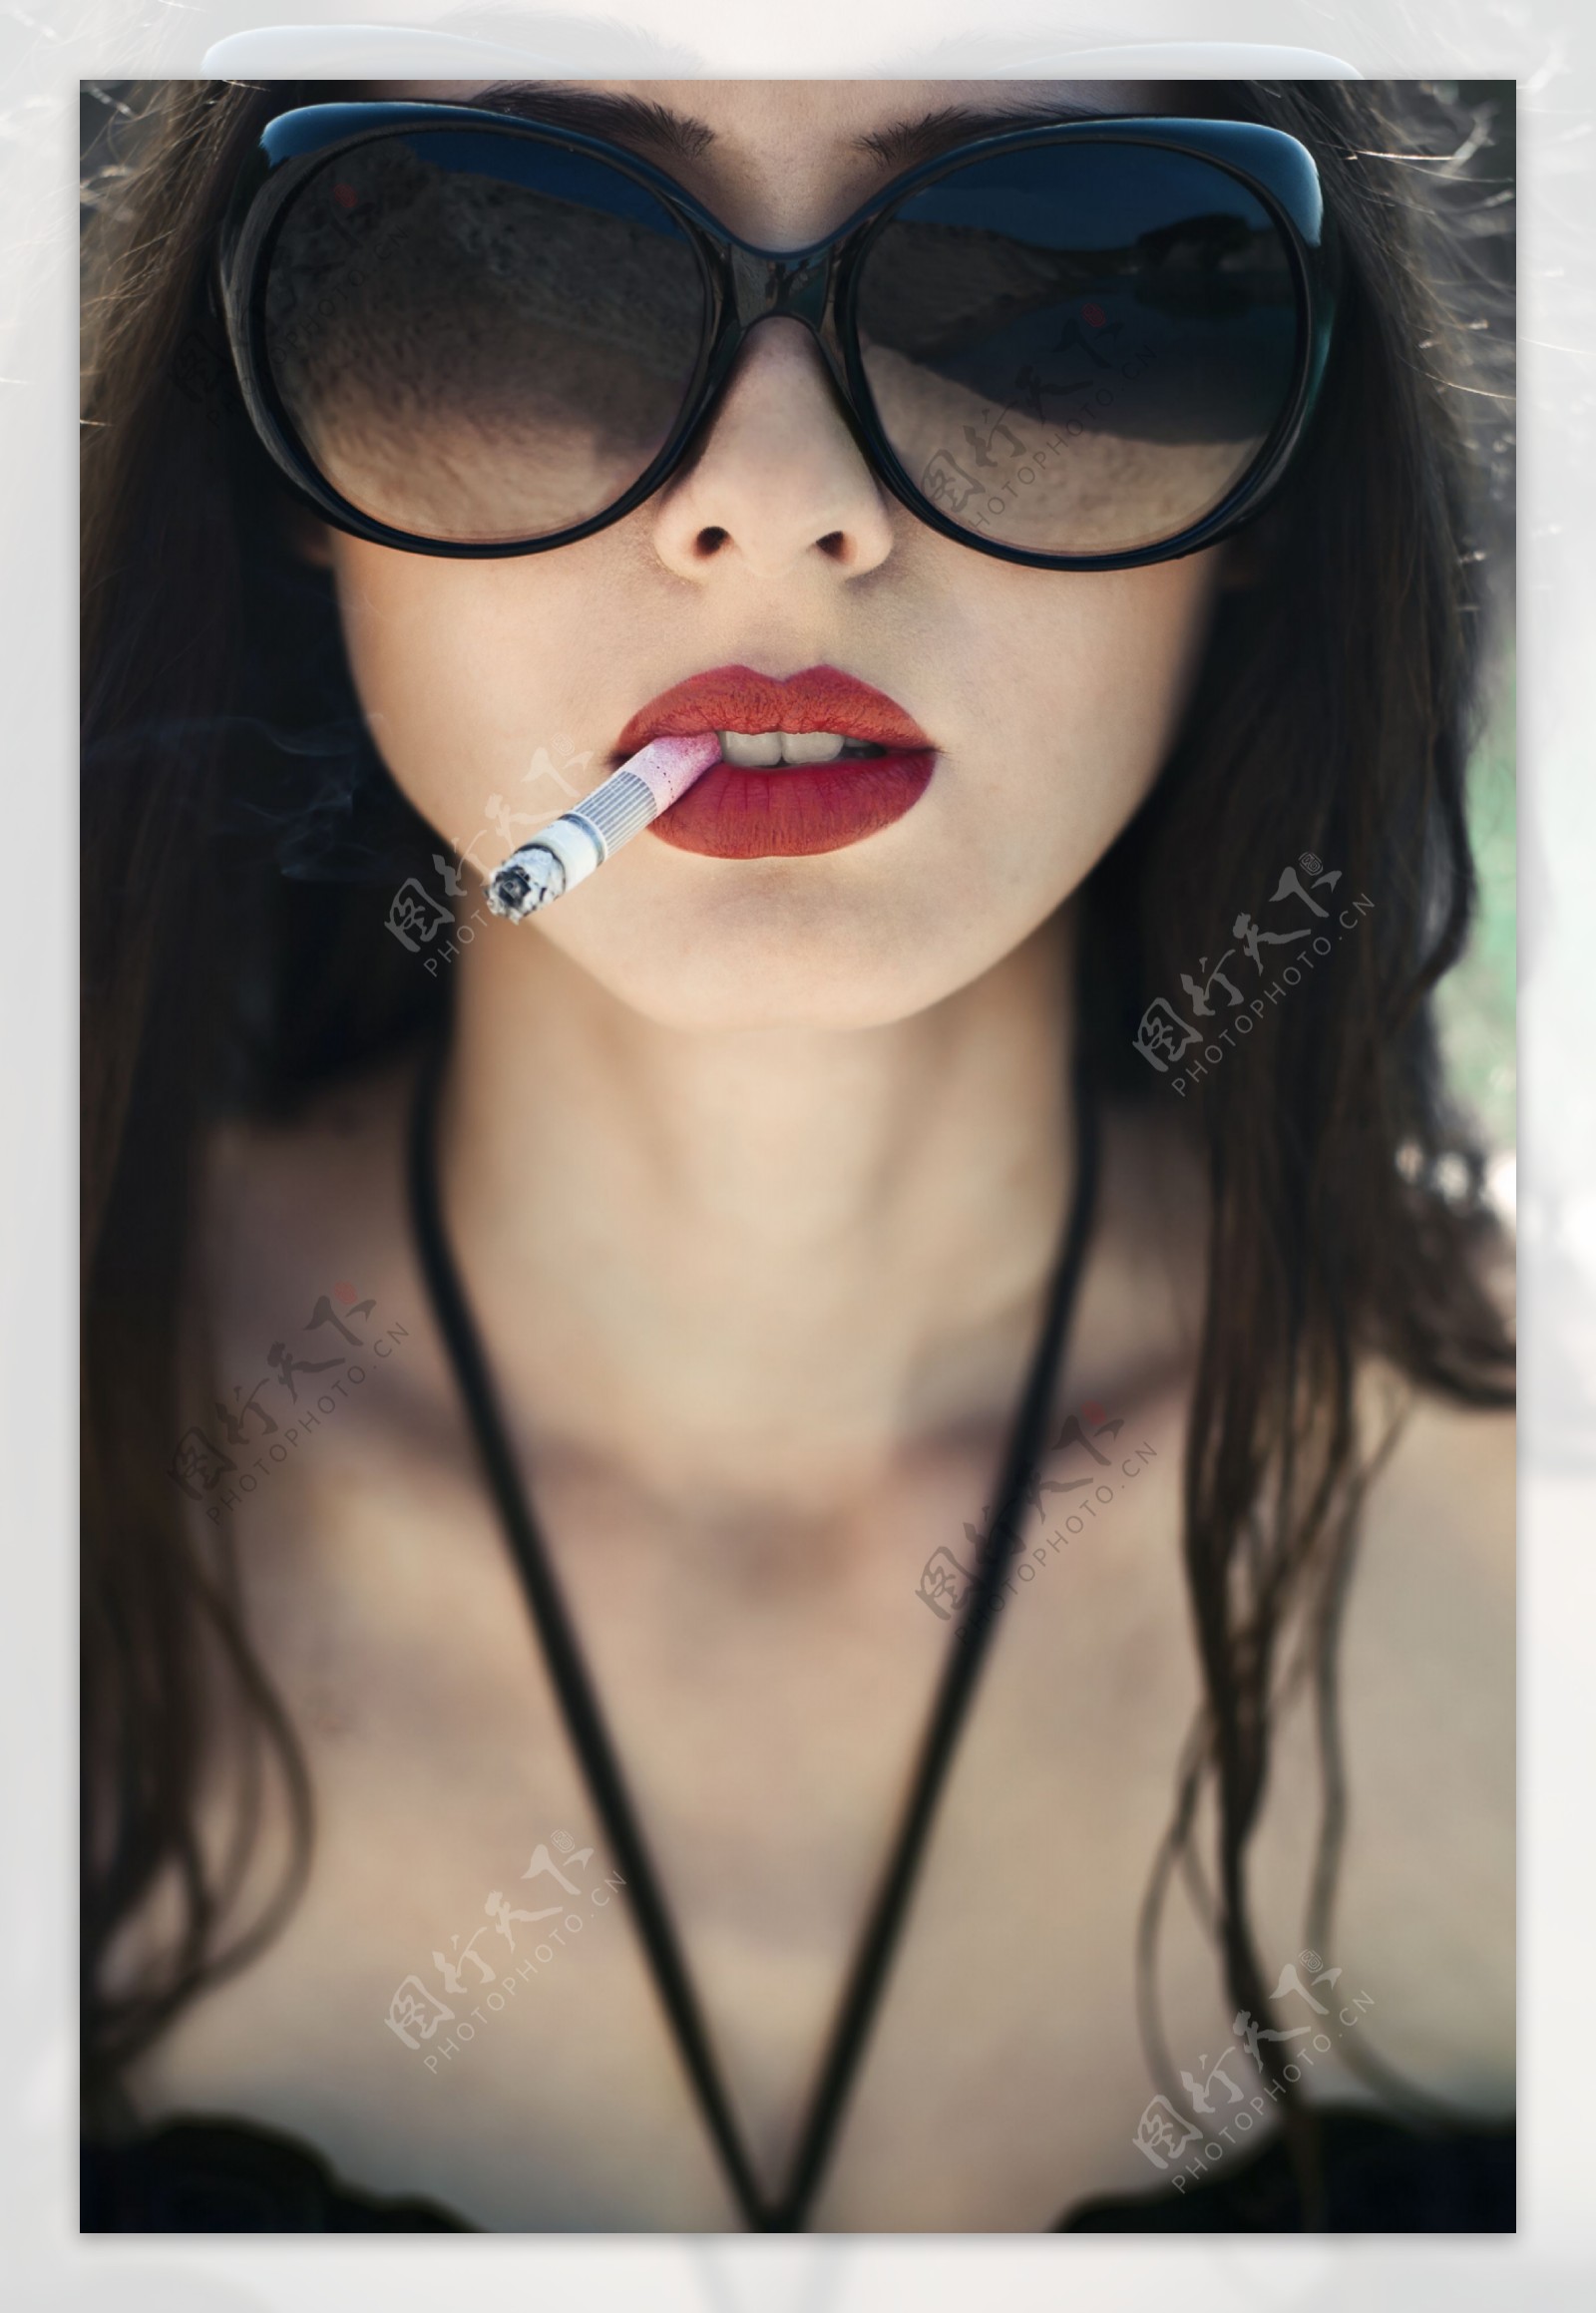 带墨镜抽烟的女人图片